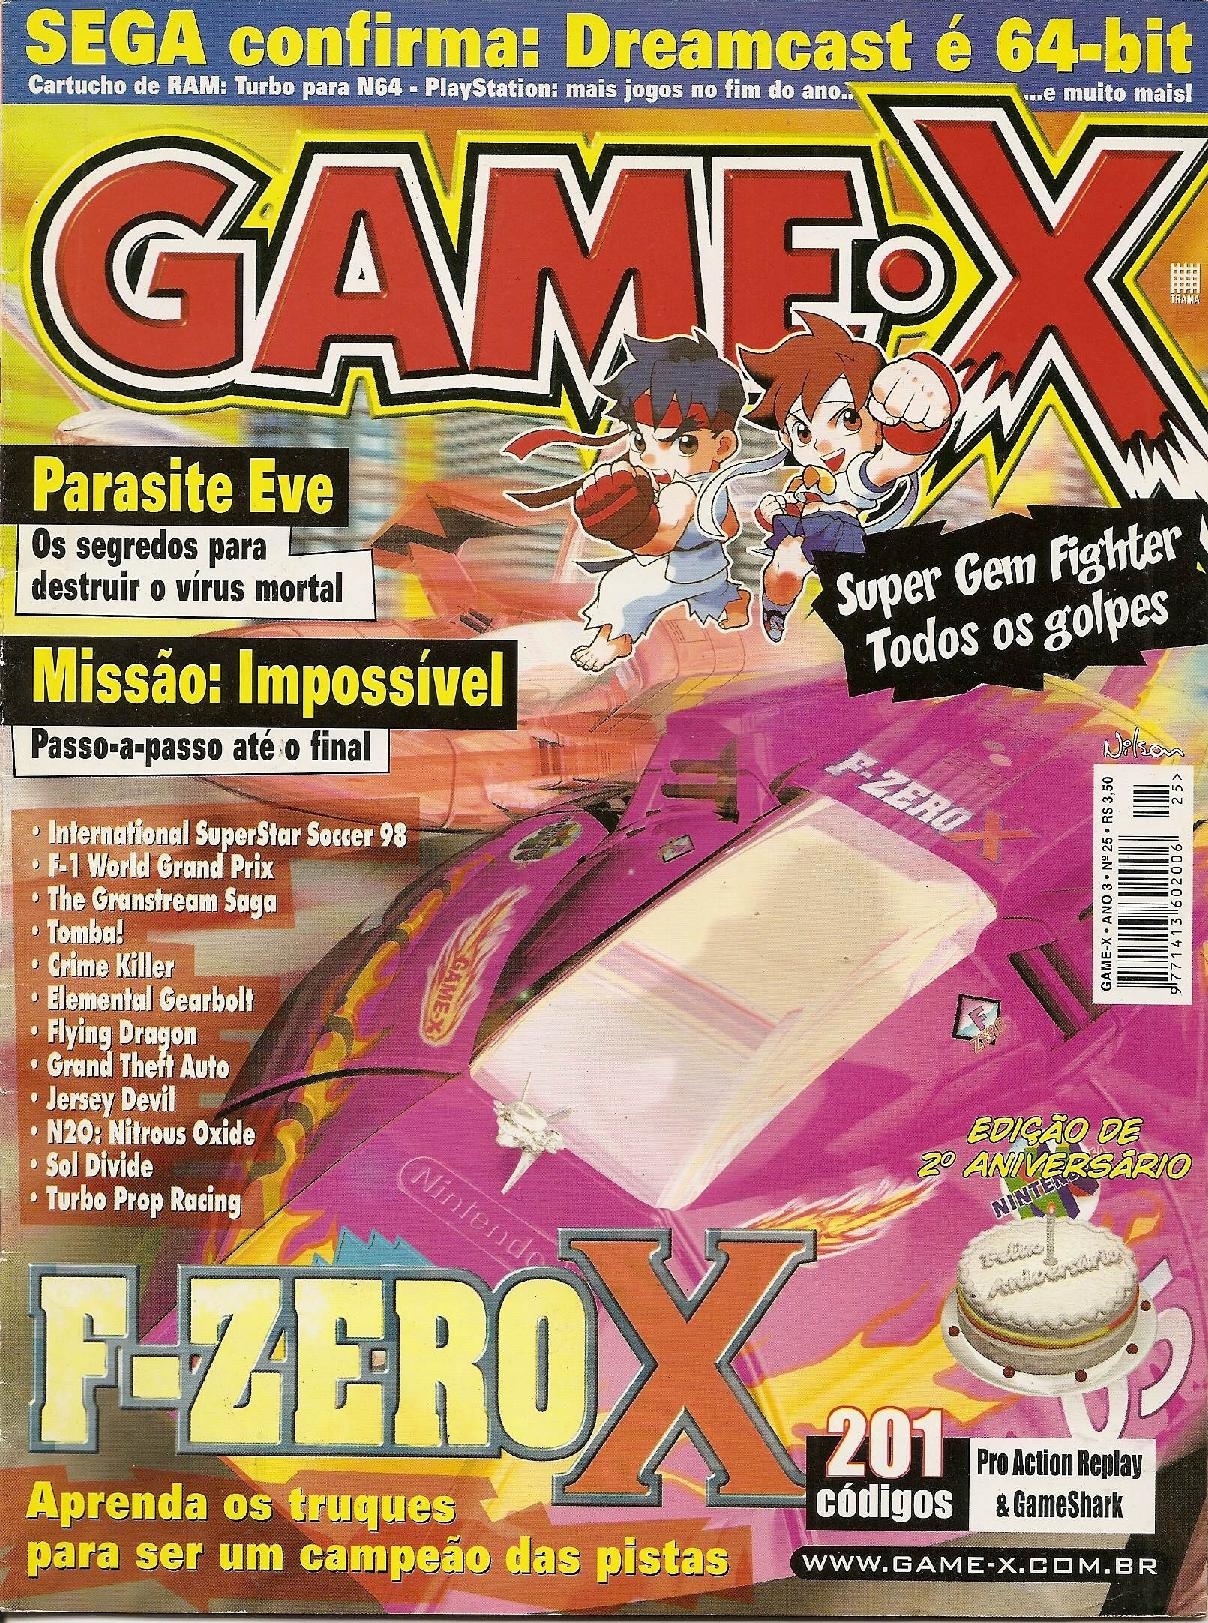 GameX BR 25.pdf